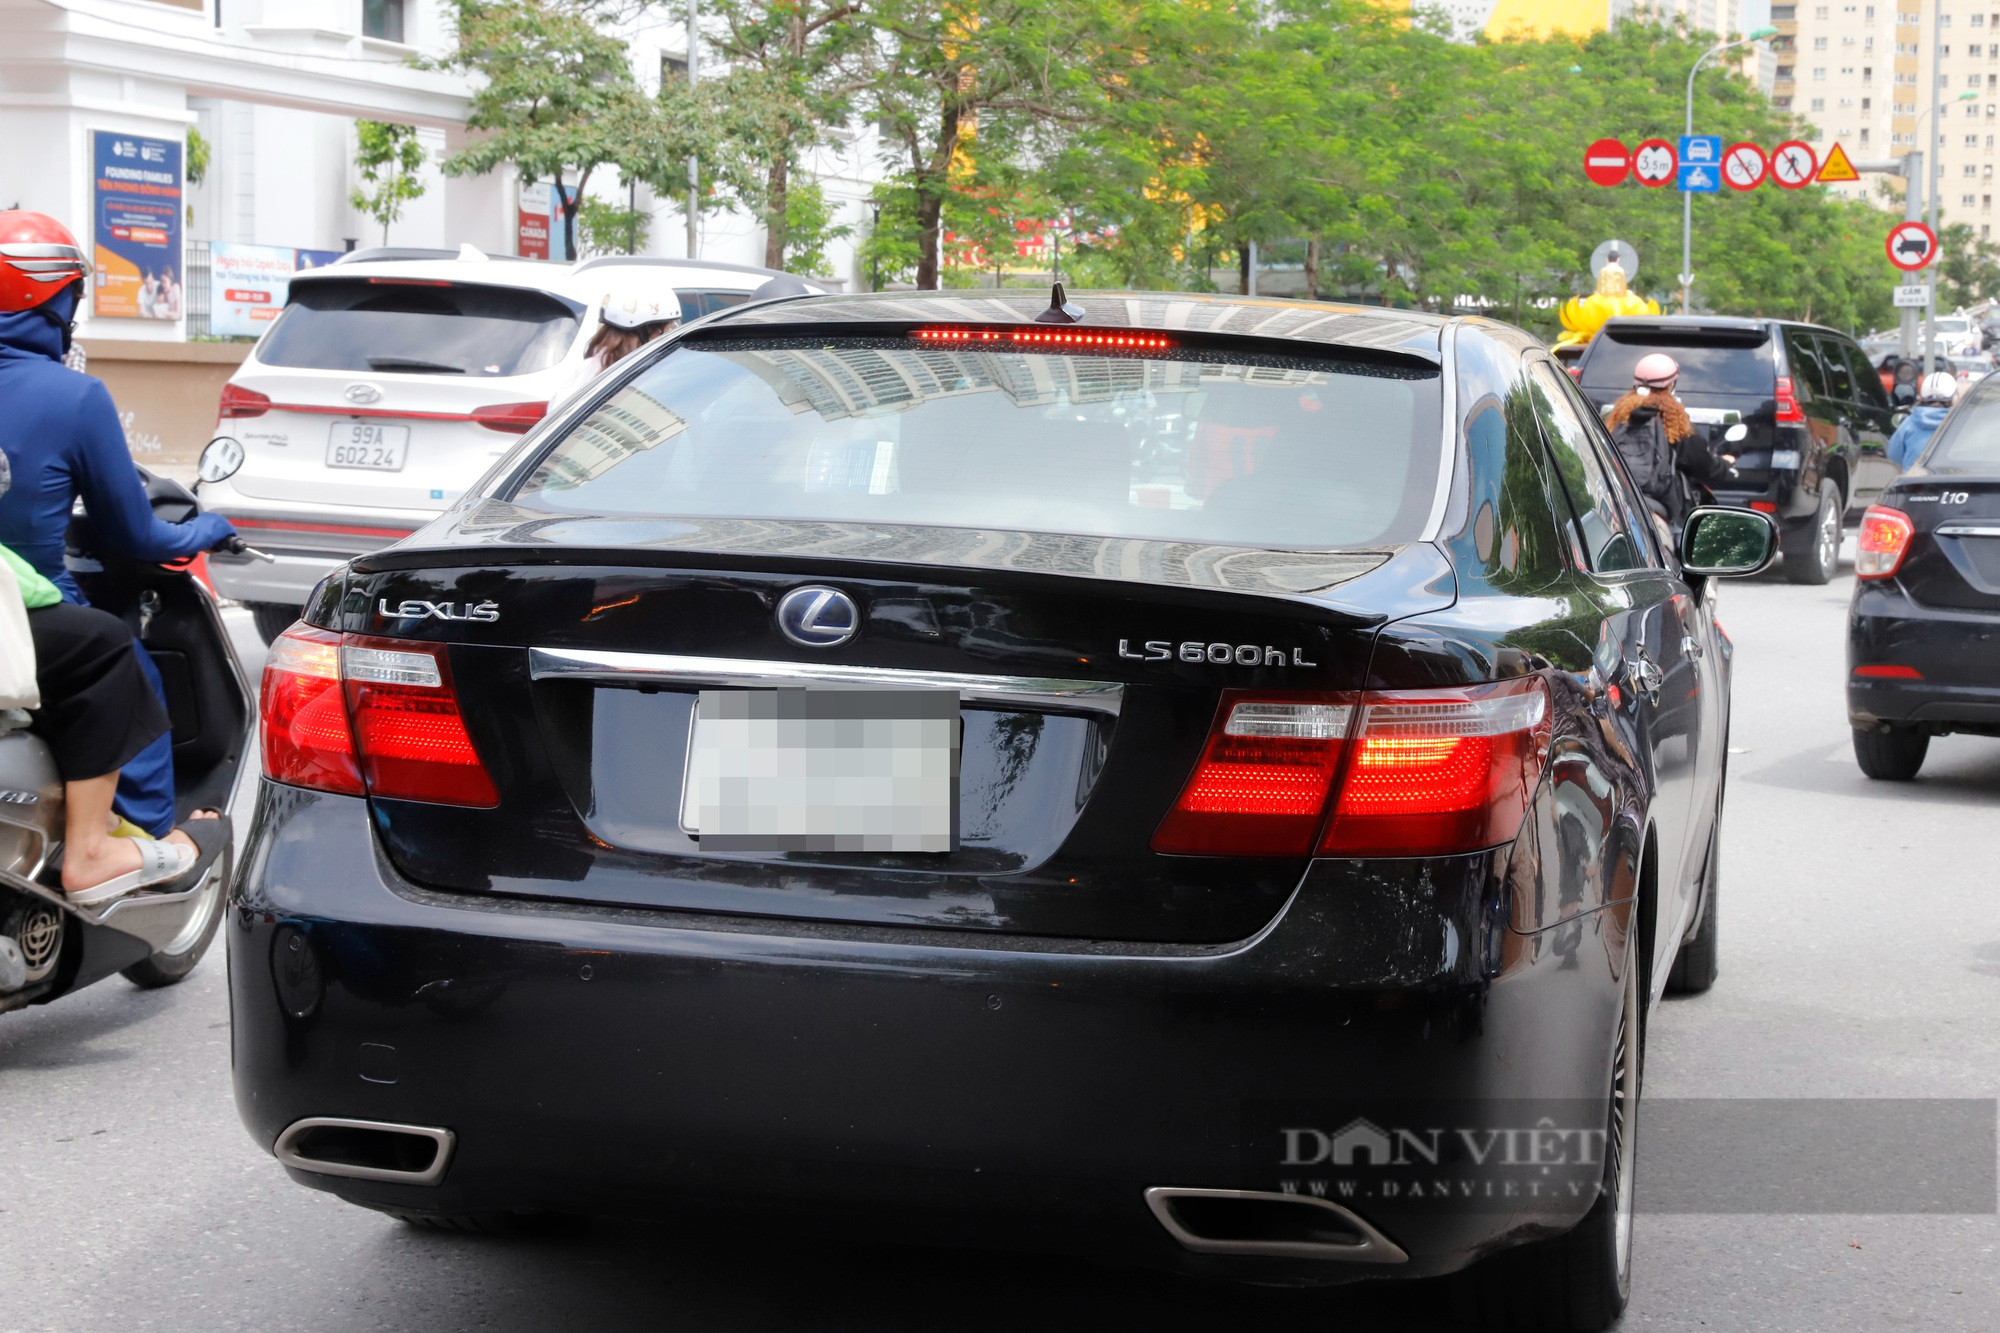 Ngắm dàn xe sang tiền tỷ Lexus, Mercedes-Maybach chở con đi thi tốt nghiệp THPT tại Hà Nội - Ảnh 7.